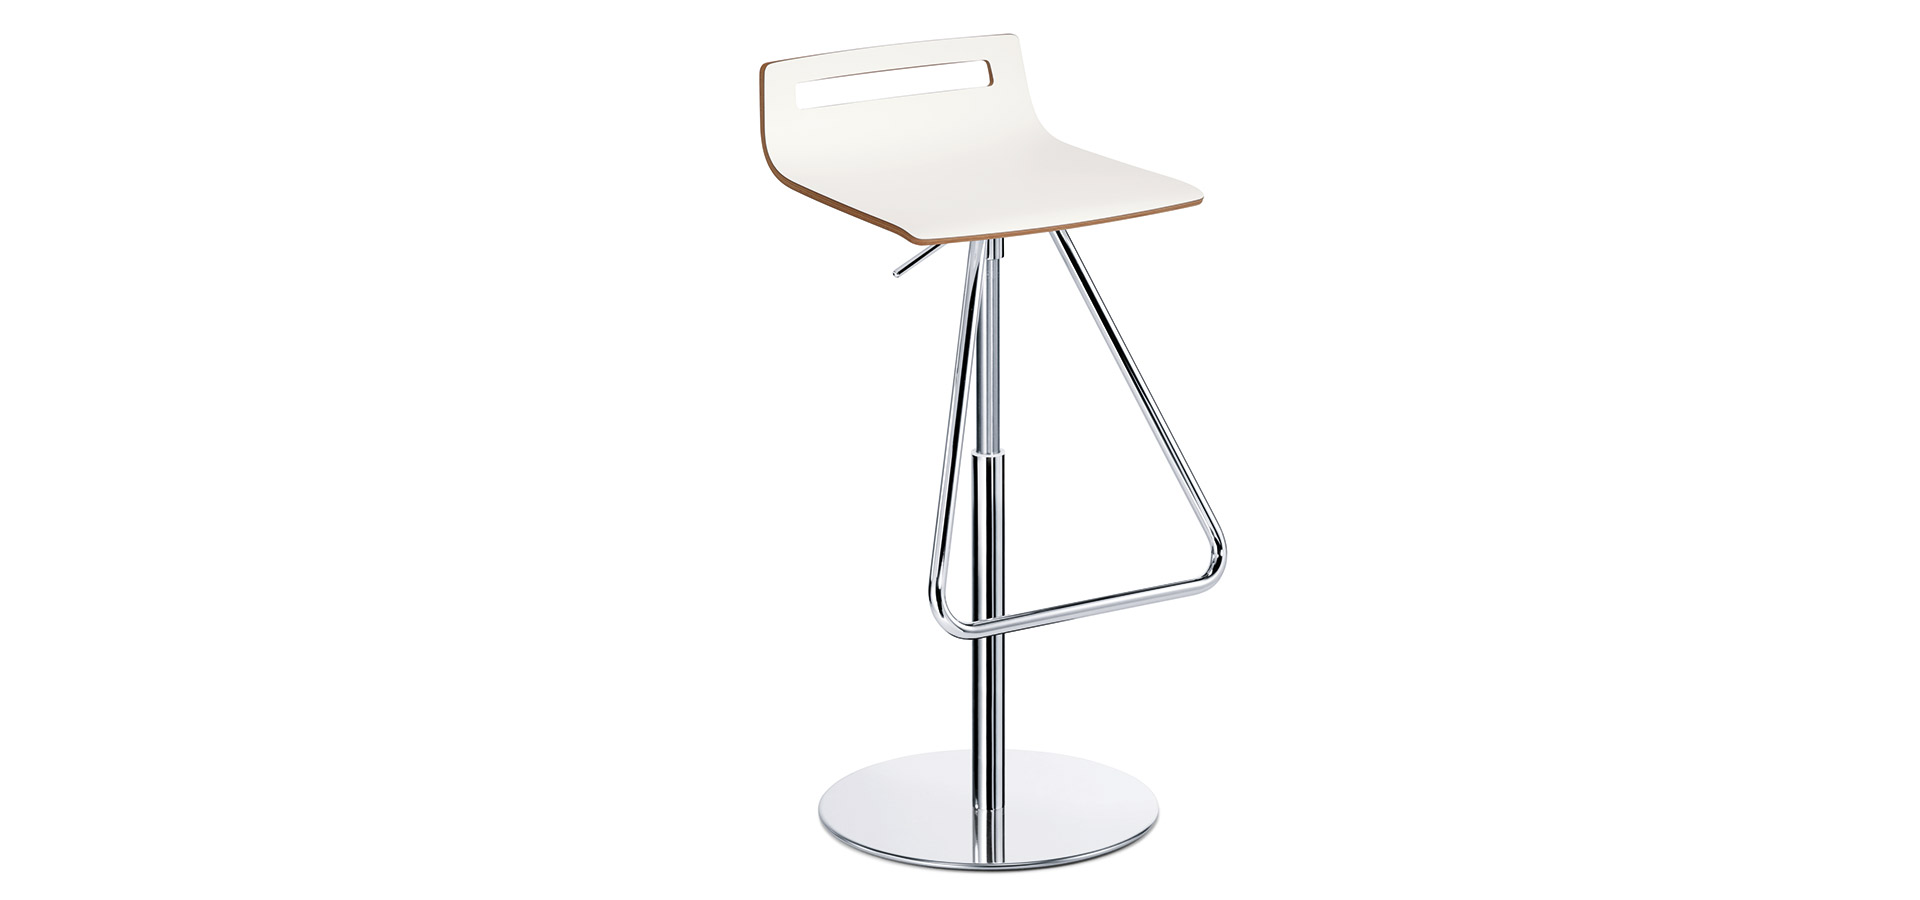 Silla contract Meet Chair - Modelos - Taburete alto giratorio con altura ajustable